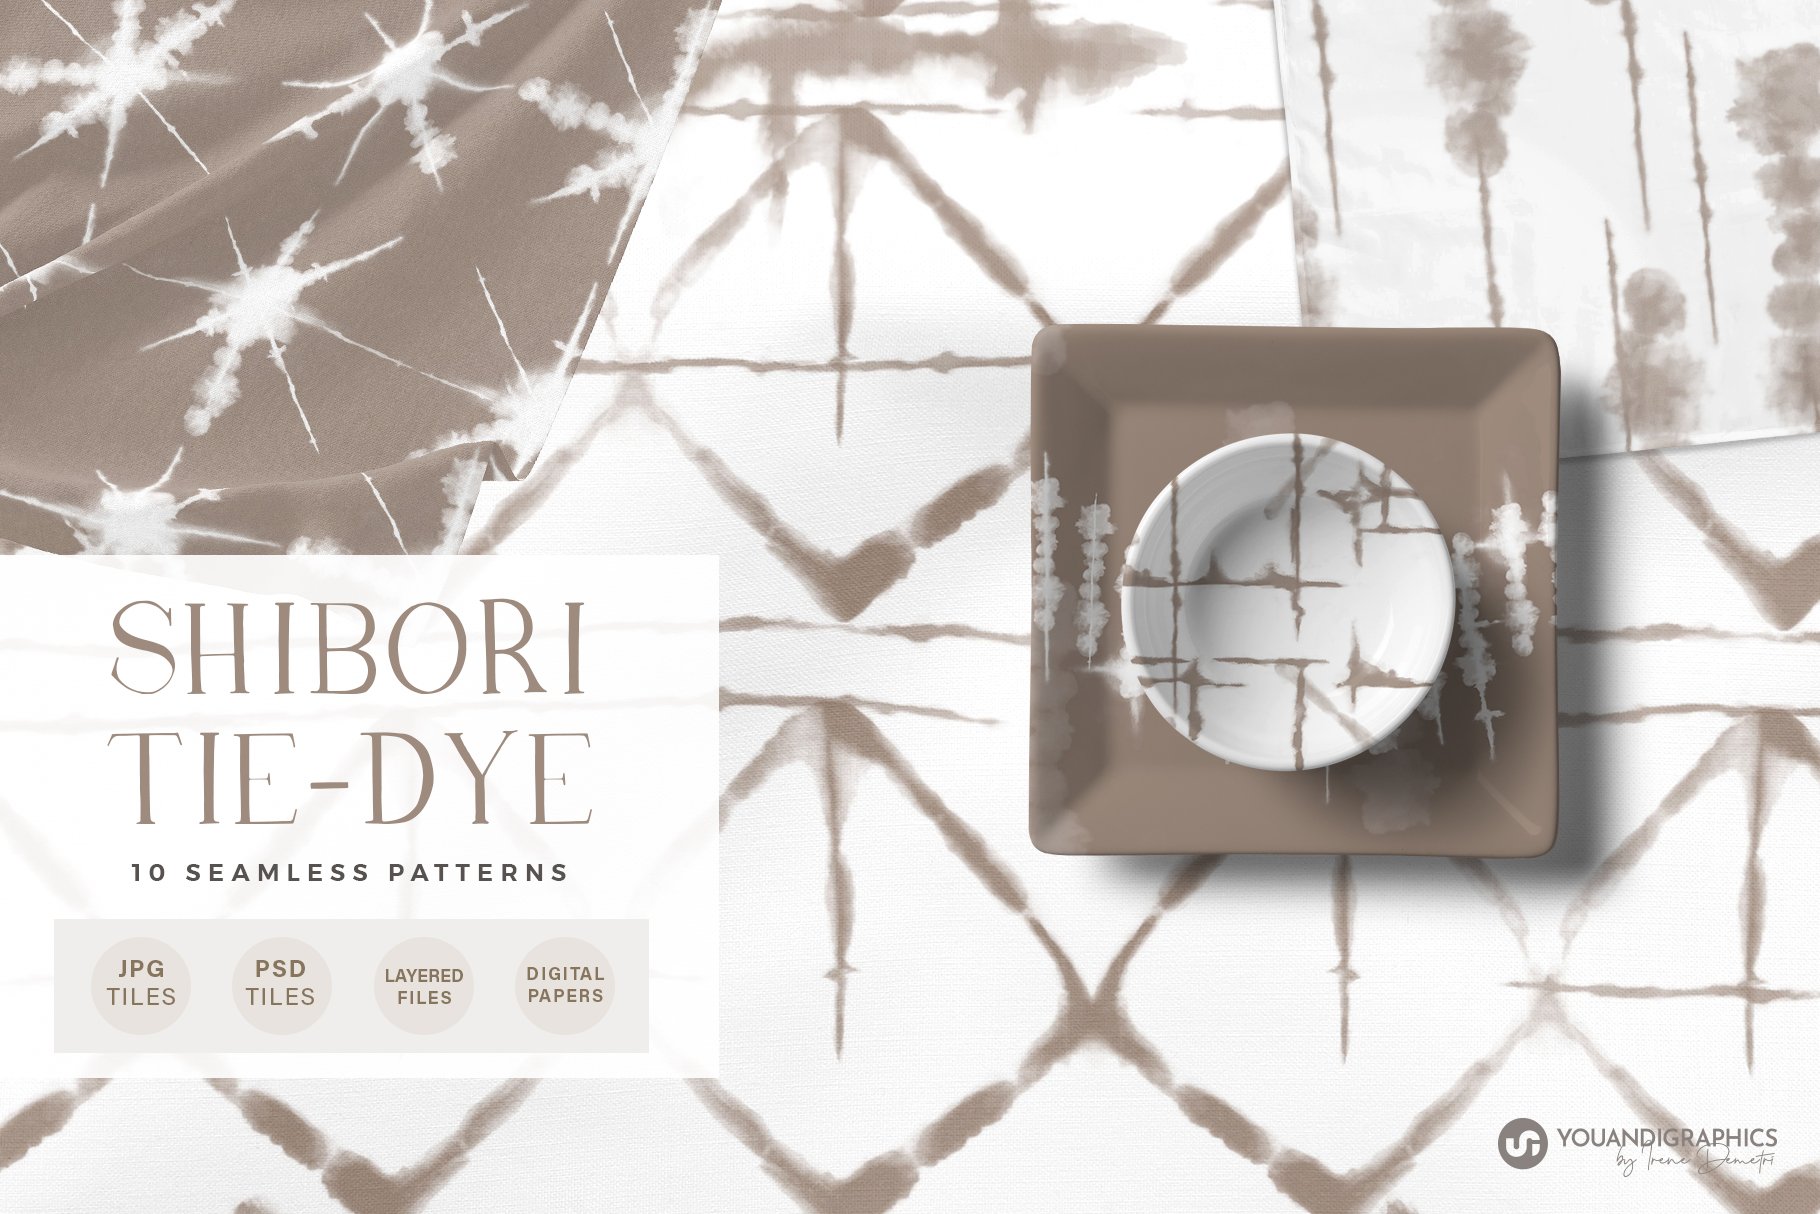 Tie-Dye Seamless Patterns - Shibori cover image.